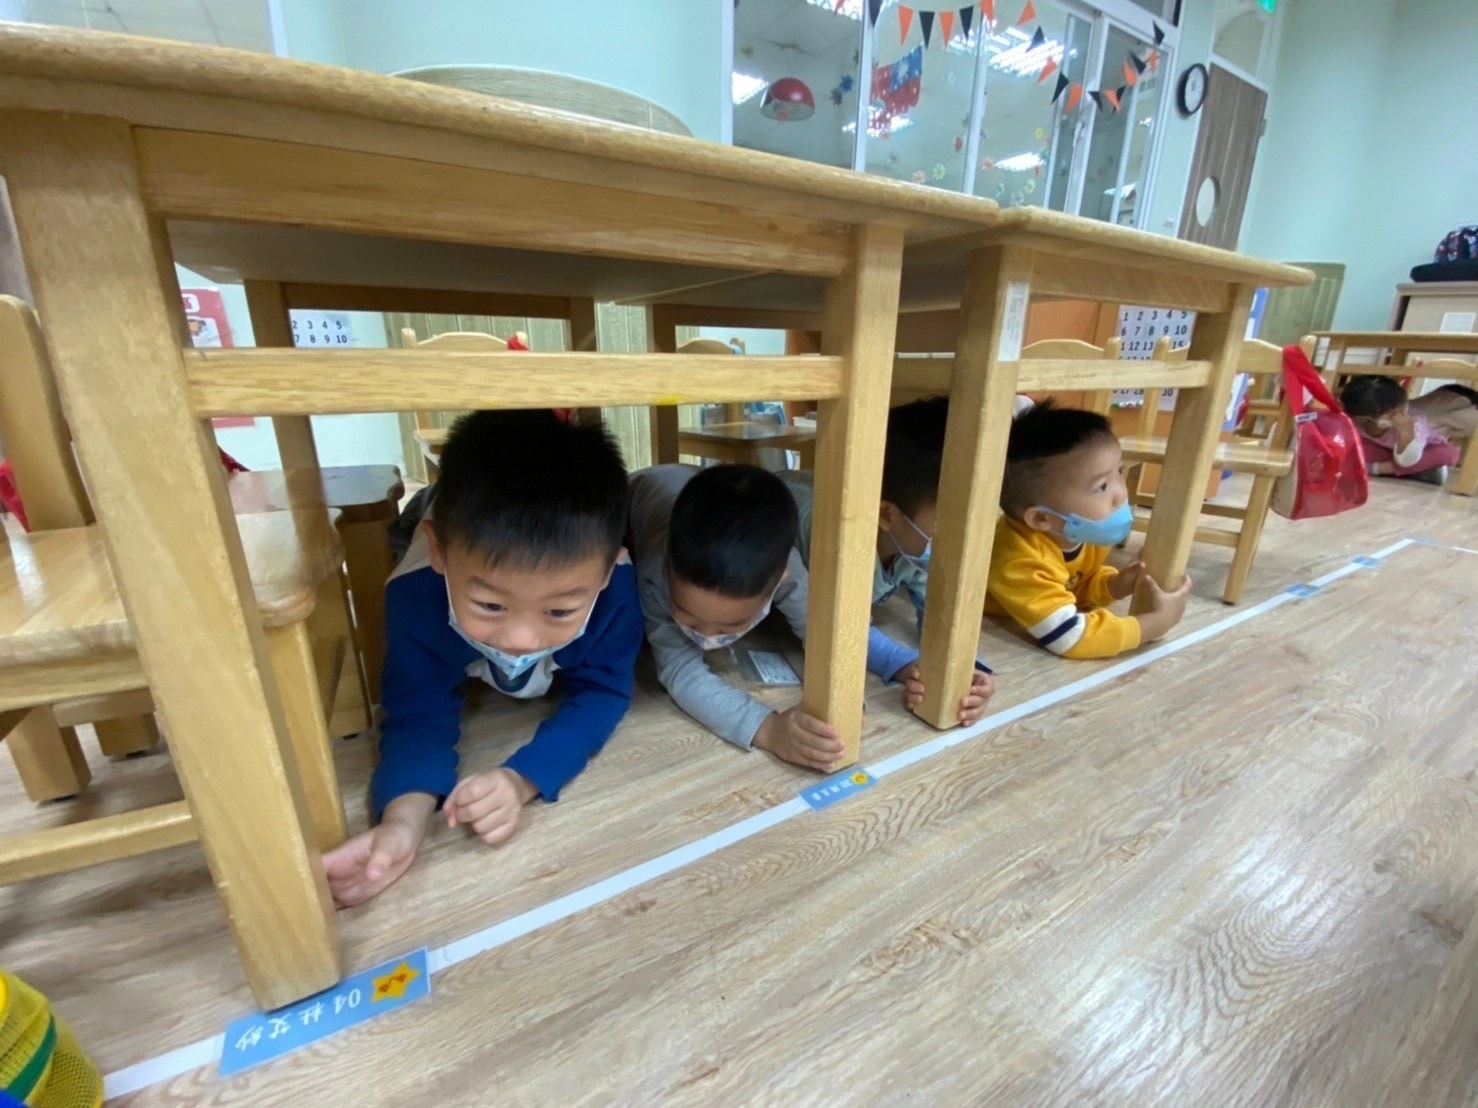 臺北市西中非營利幼兒園幼兒演練防震三步驟動作